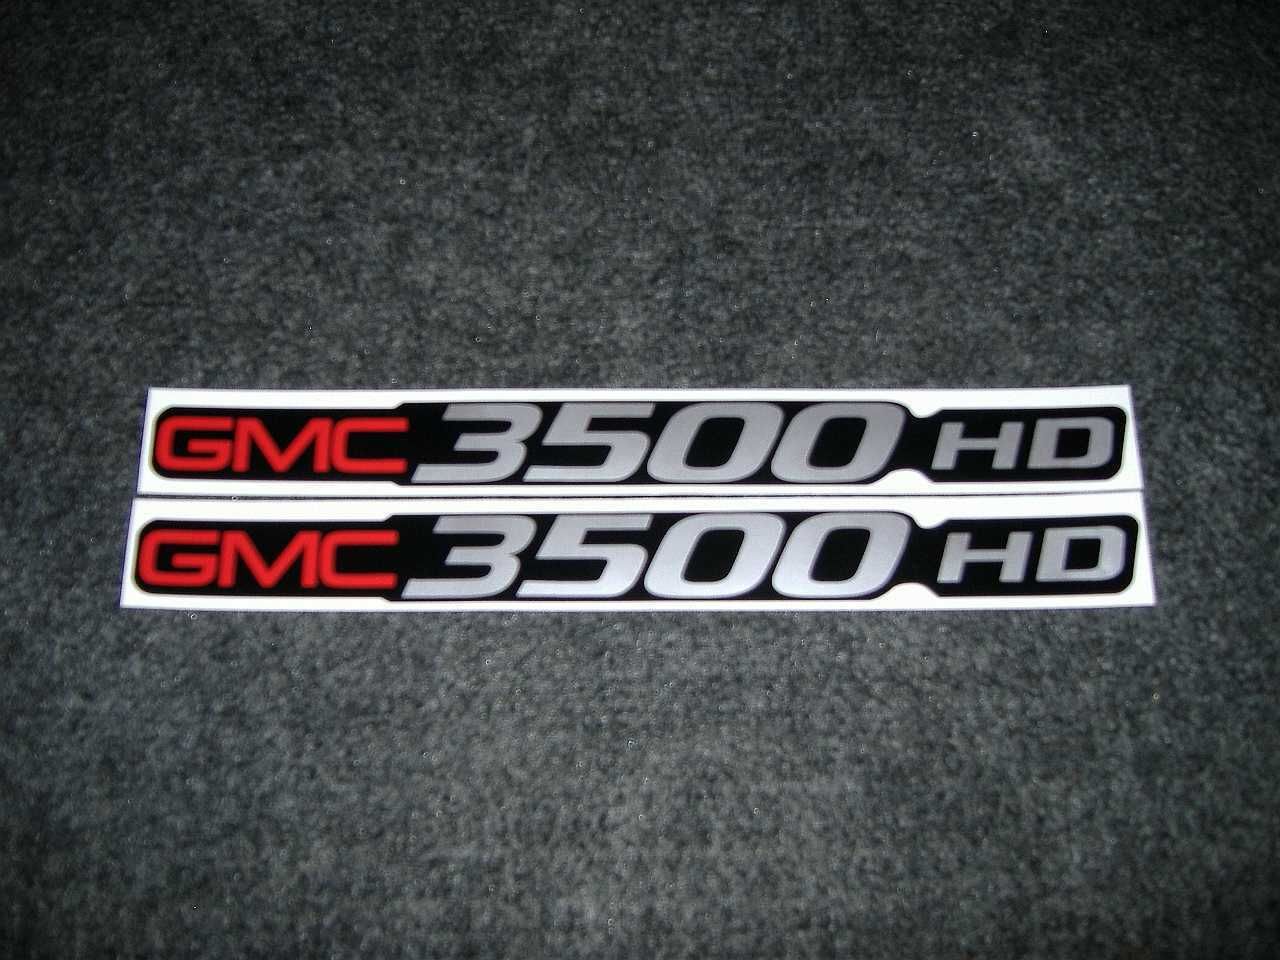 2 Gmc 3500 Hd Decals Gmc C3500 Heavy Duty Sierra Yukon Size Badge Decals Stickersdecals Stickers